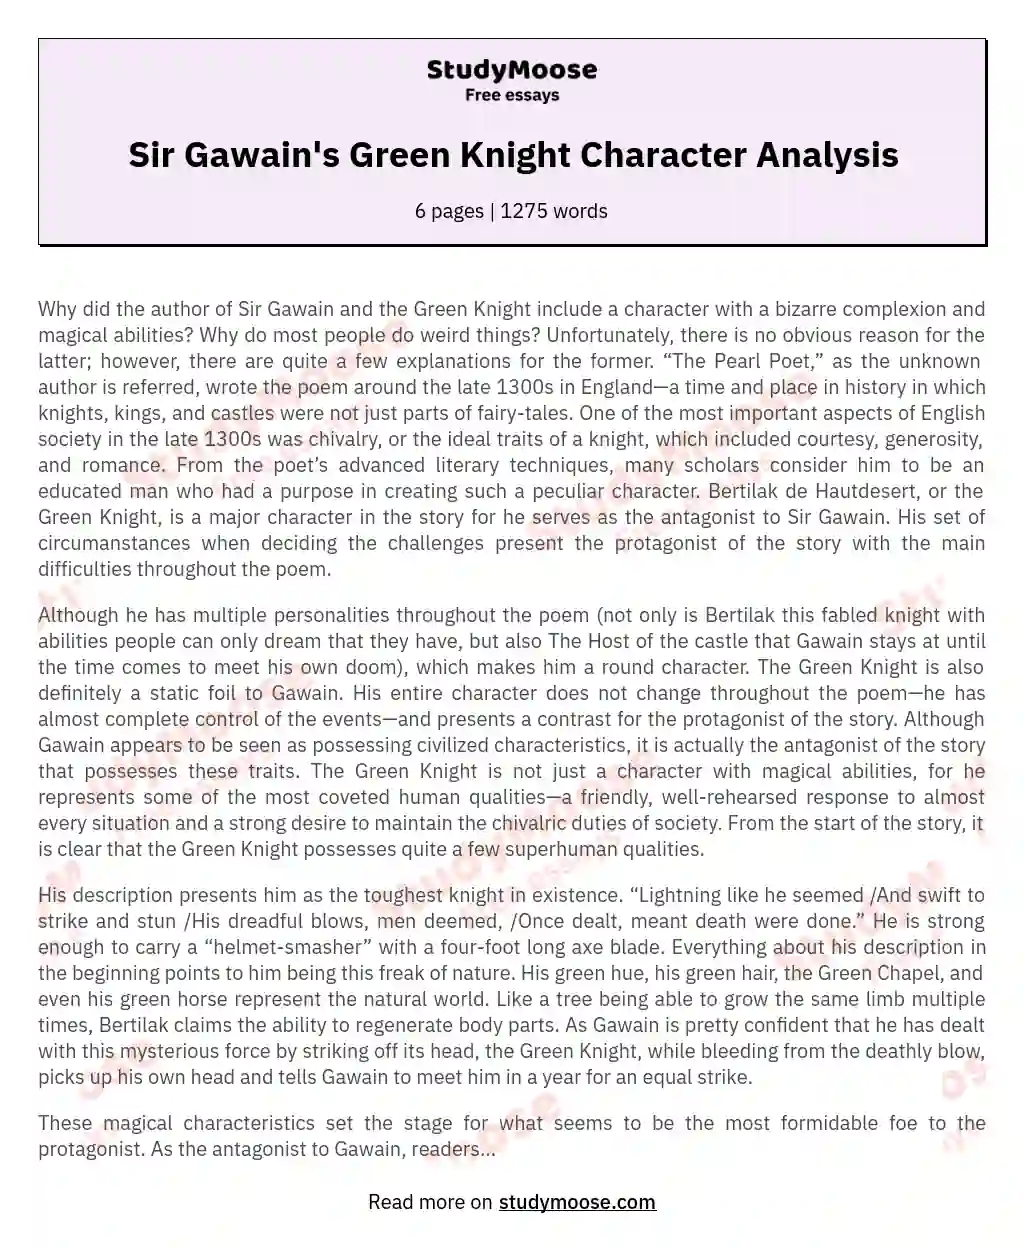 Sir Gawain's Green Knight Character Analysis essay